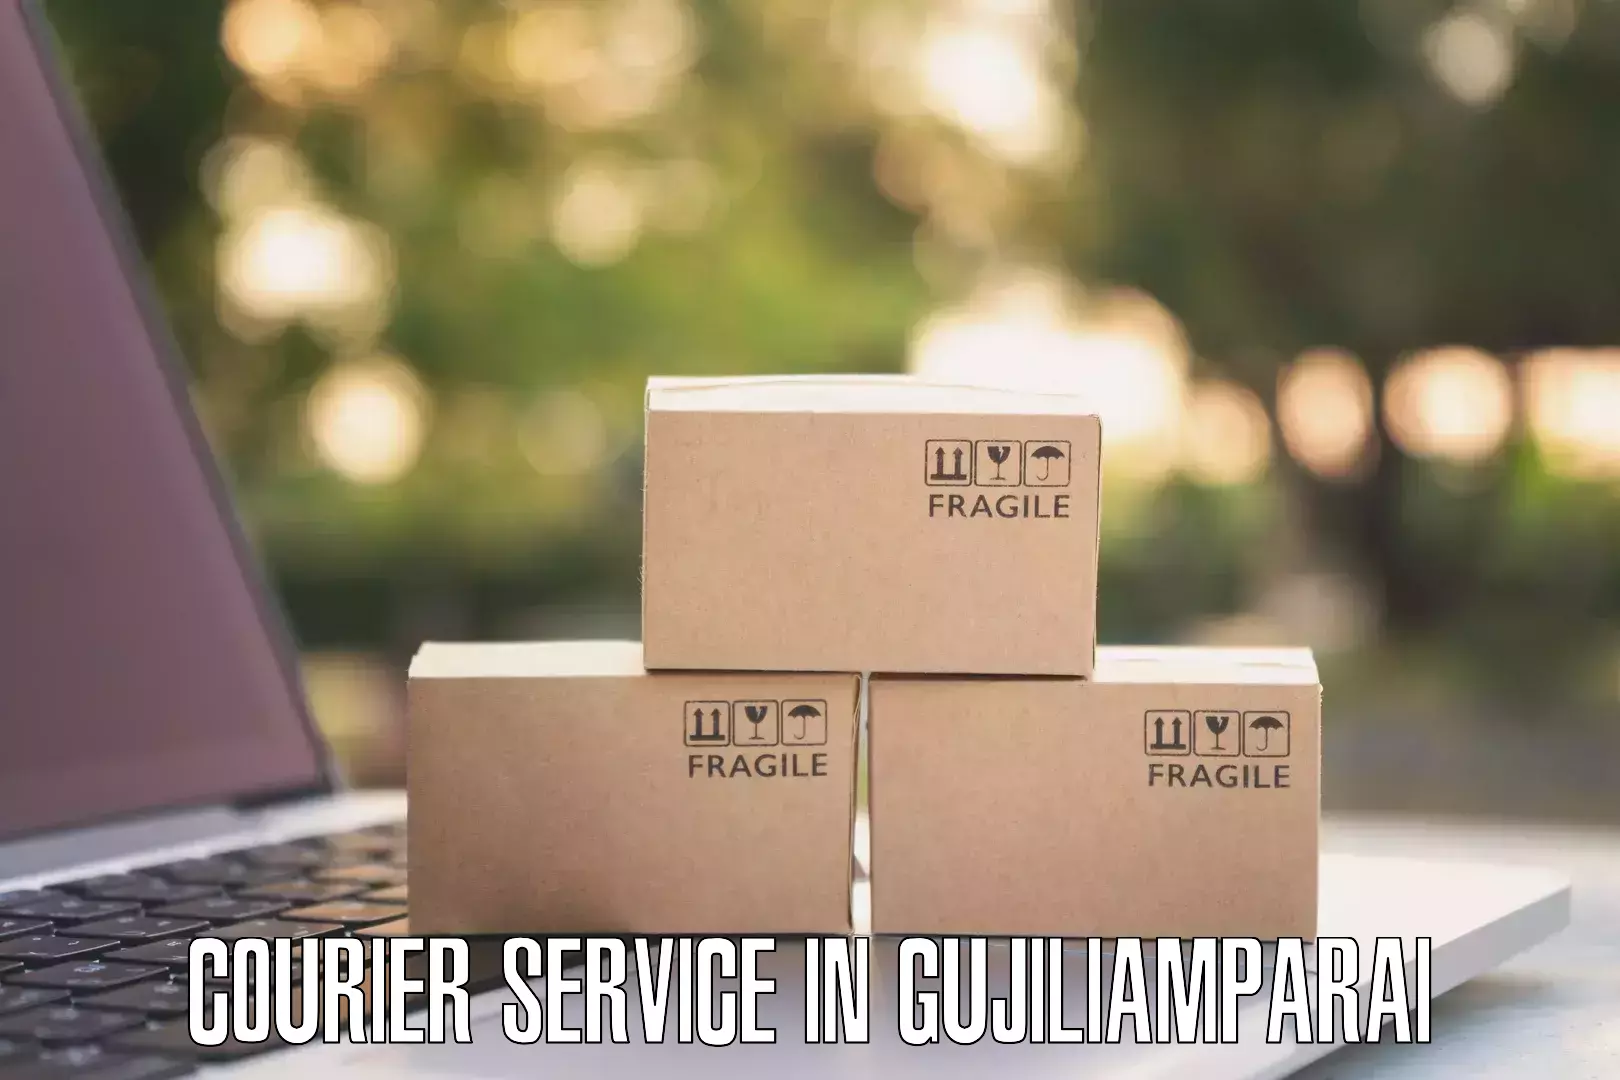 Courier service comparison in Gujiliamparai